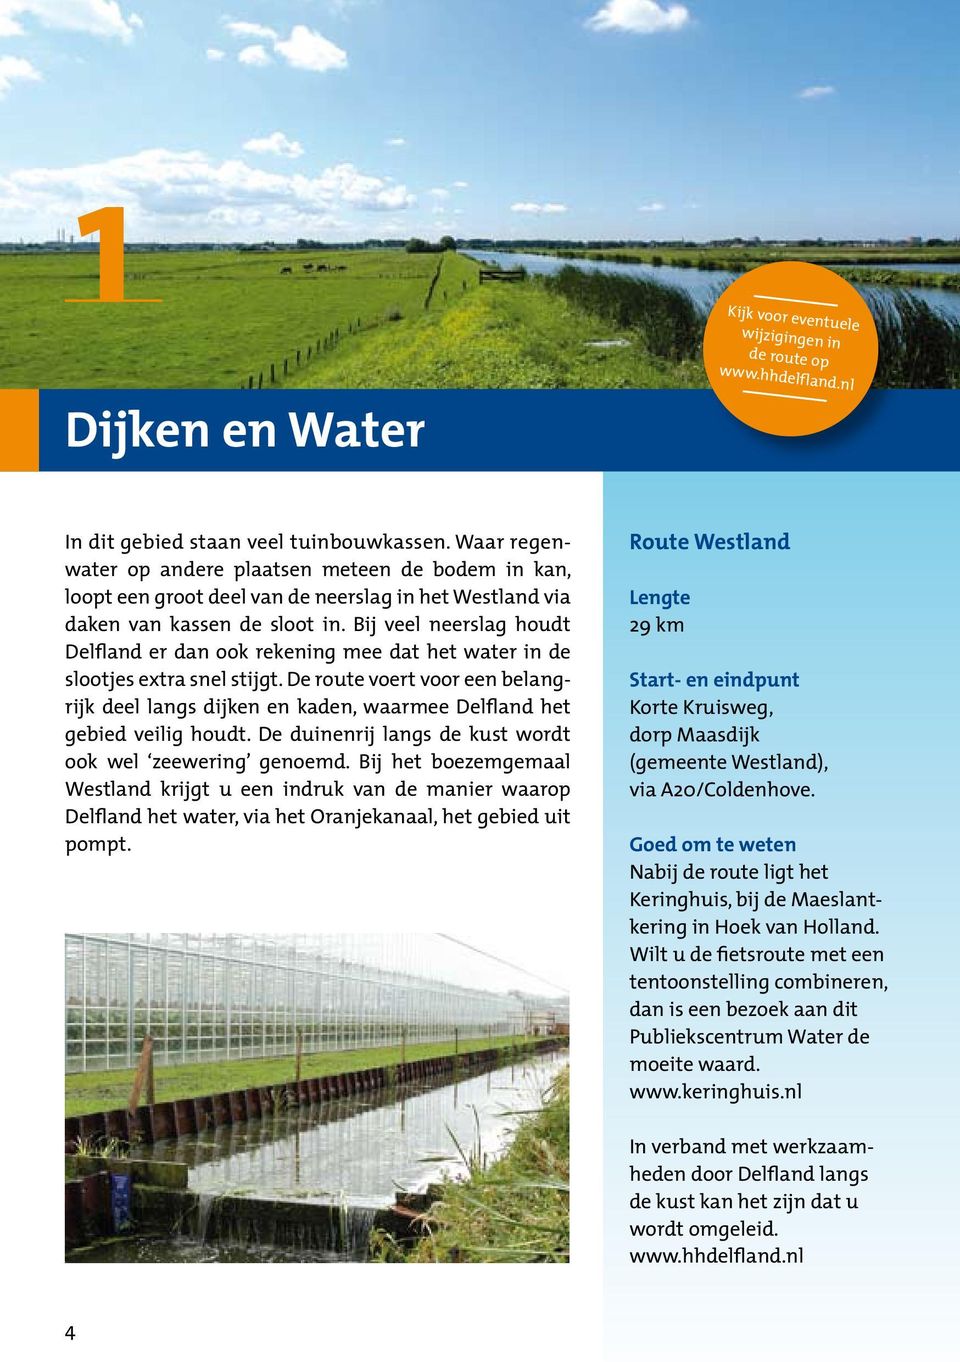 Bij veel neerslag houdt Delfland er dan ook rekening mee dat het water in de slootjes extra snel stijgt.